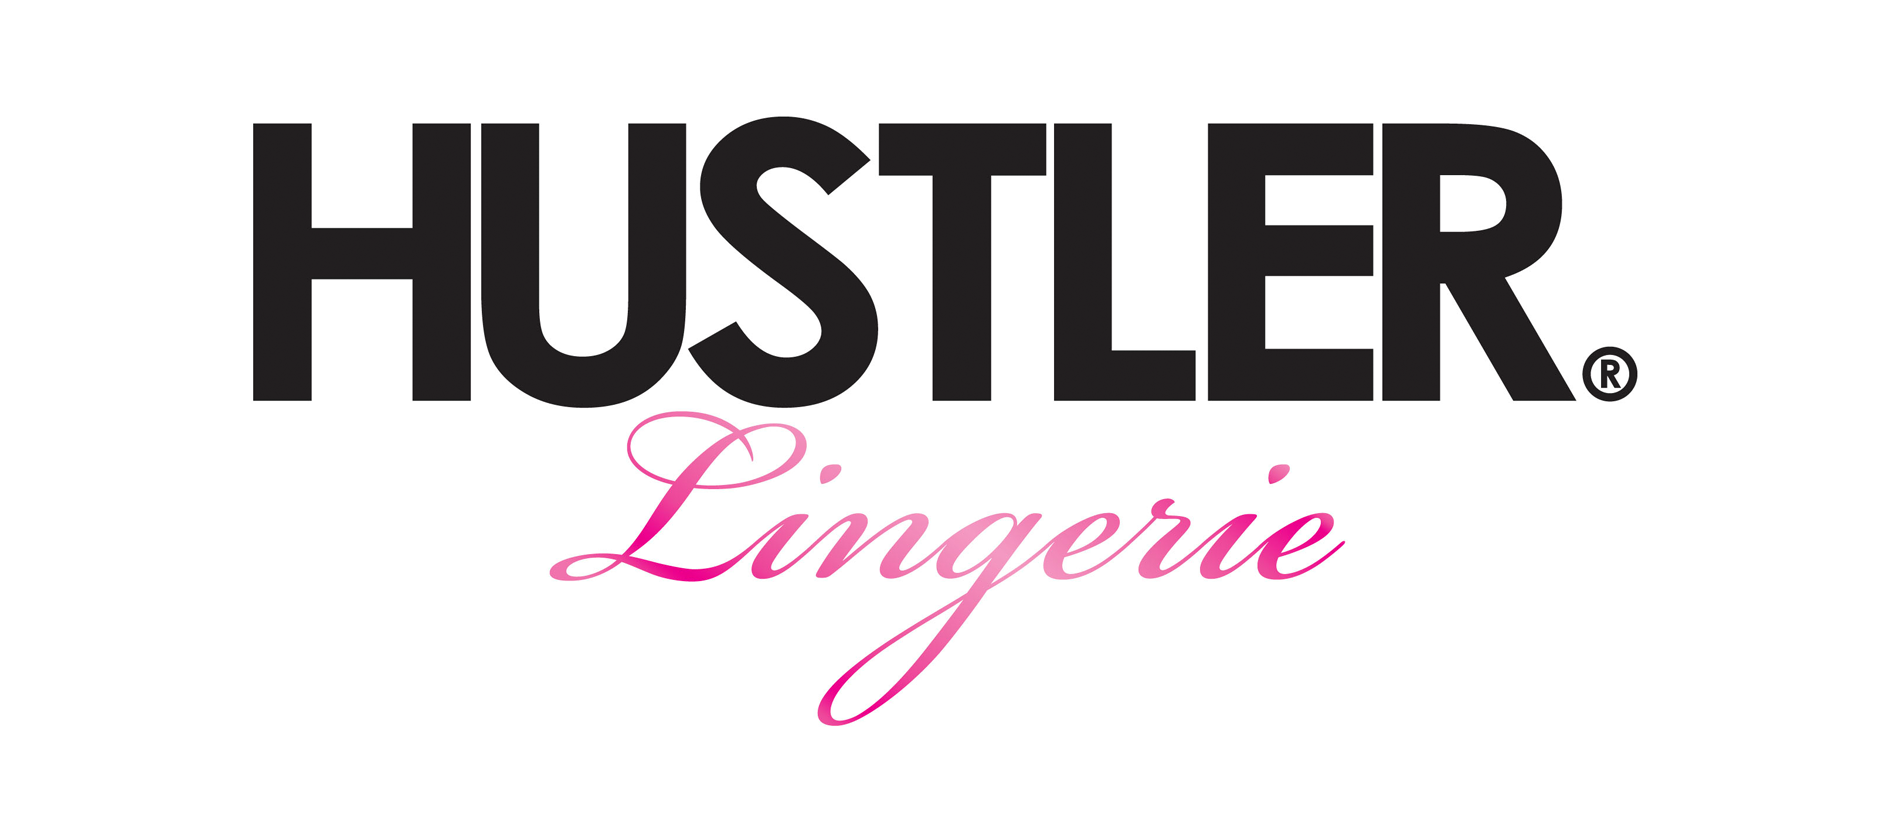 Hustler Lingerie